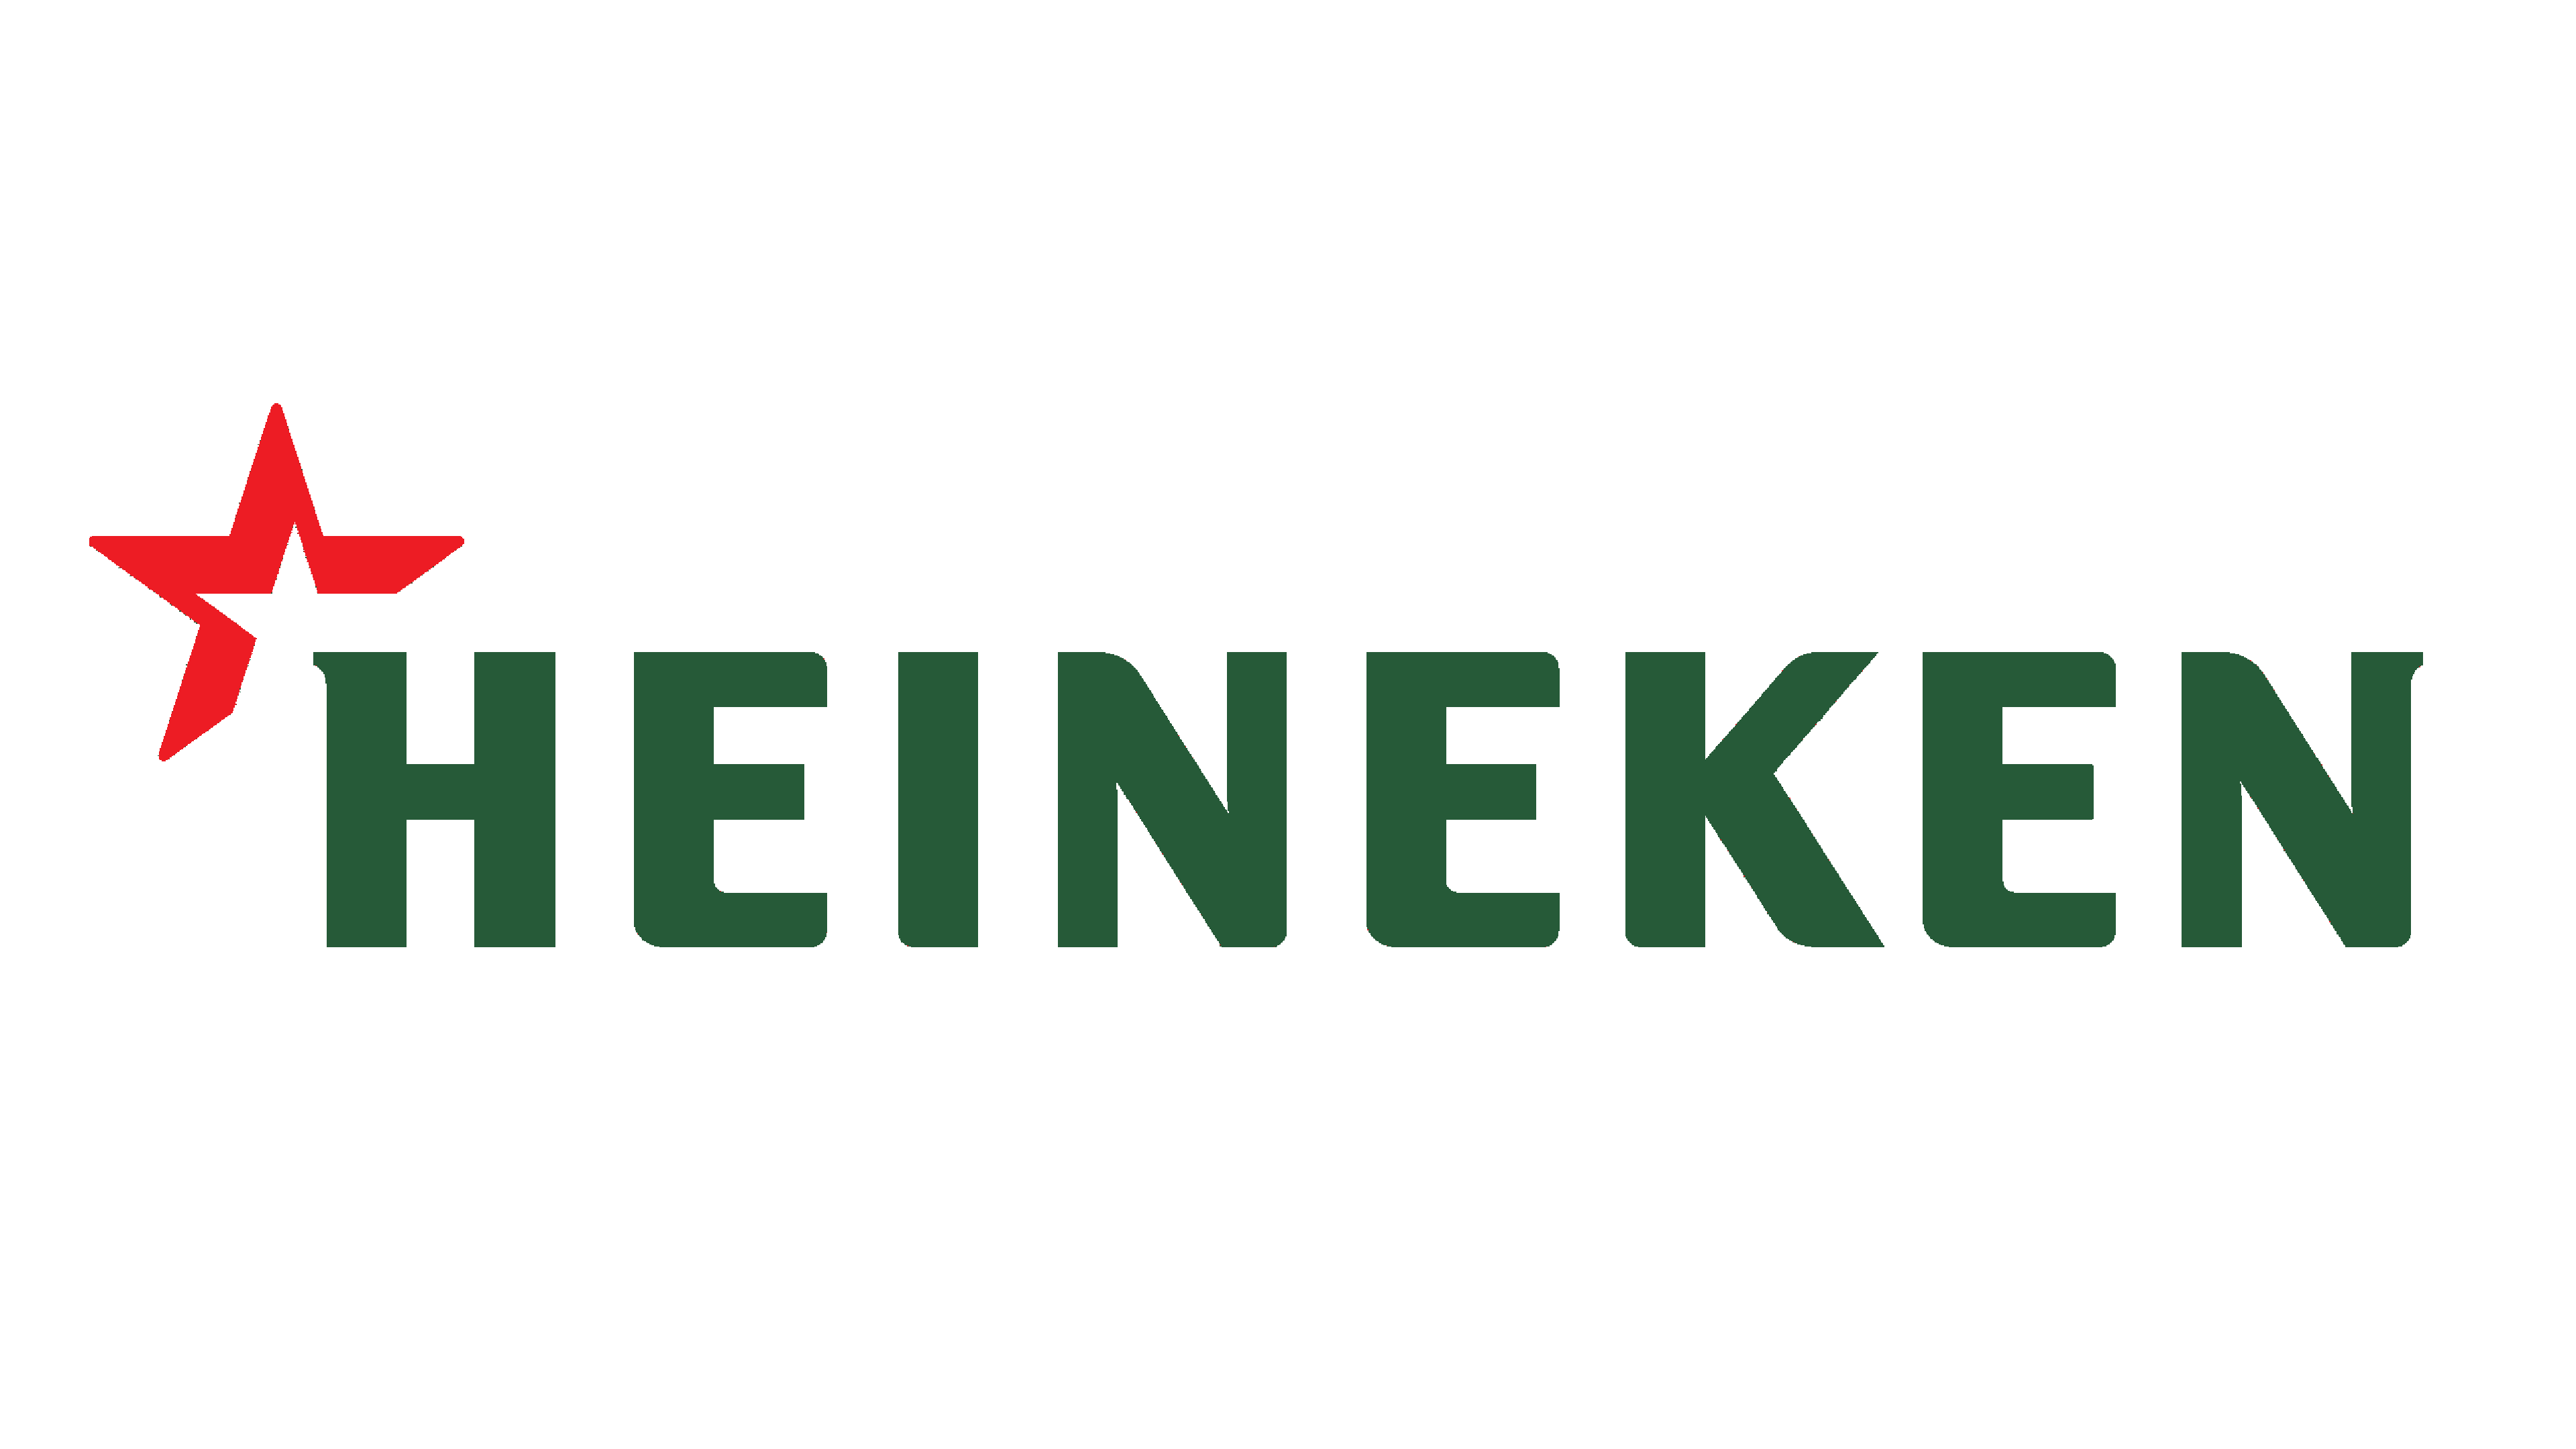 Heineken Logo Logo